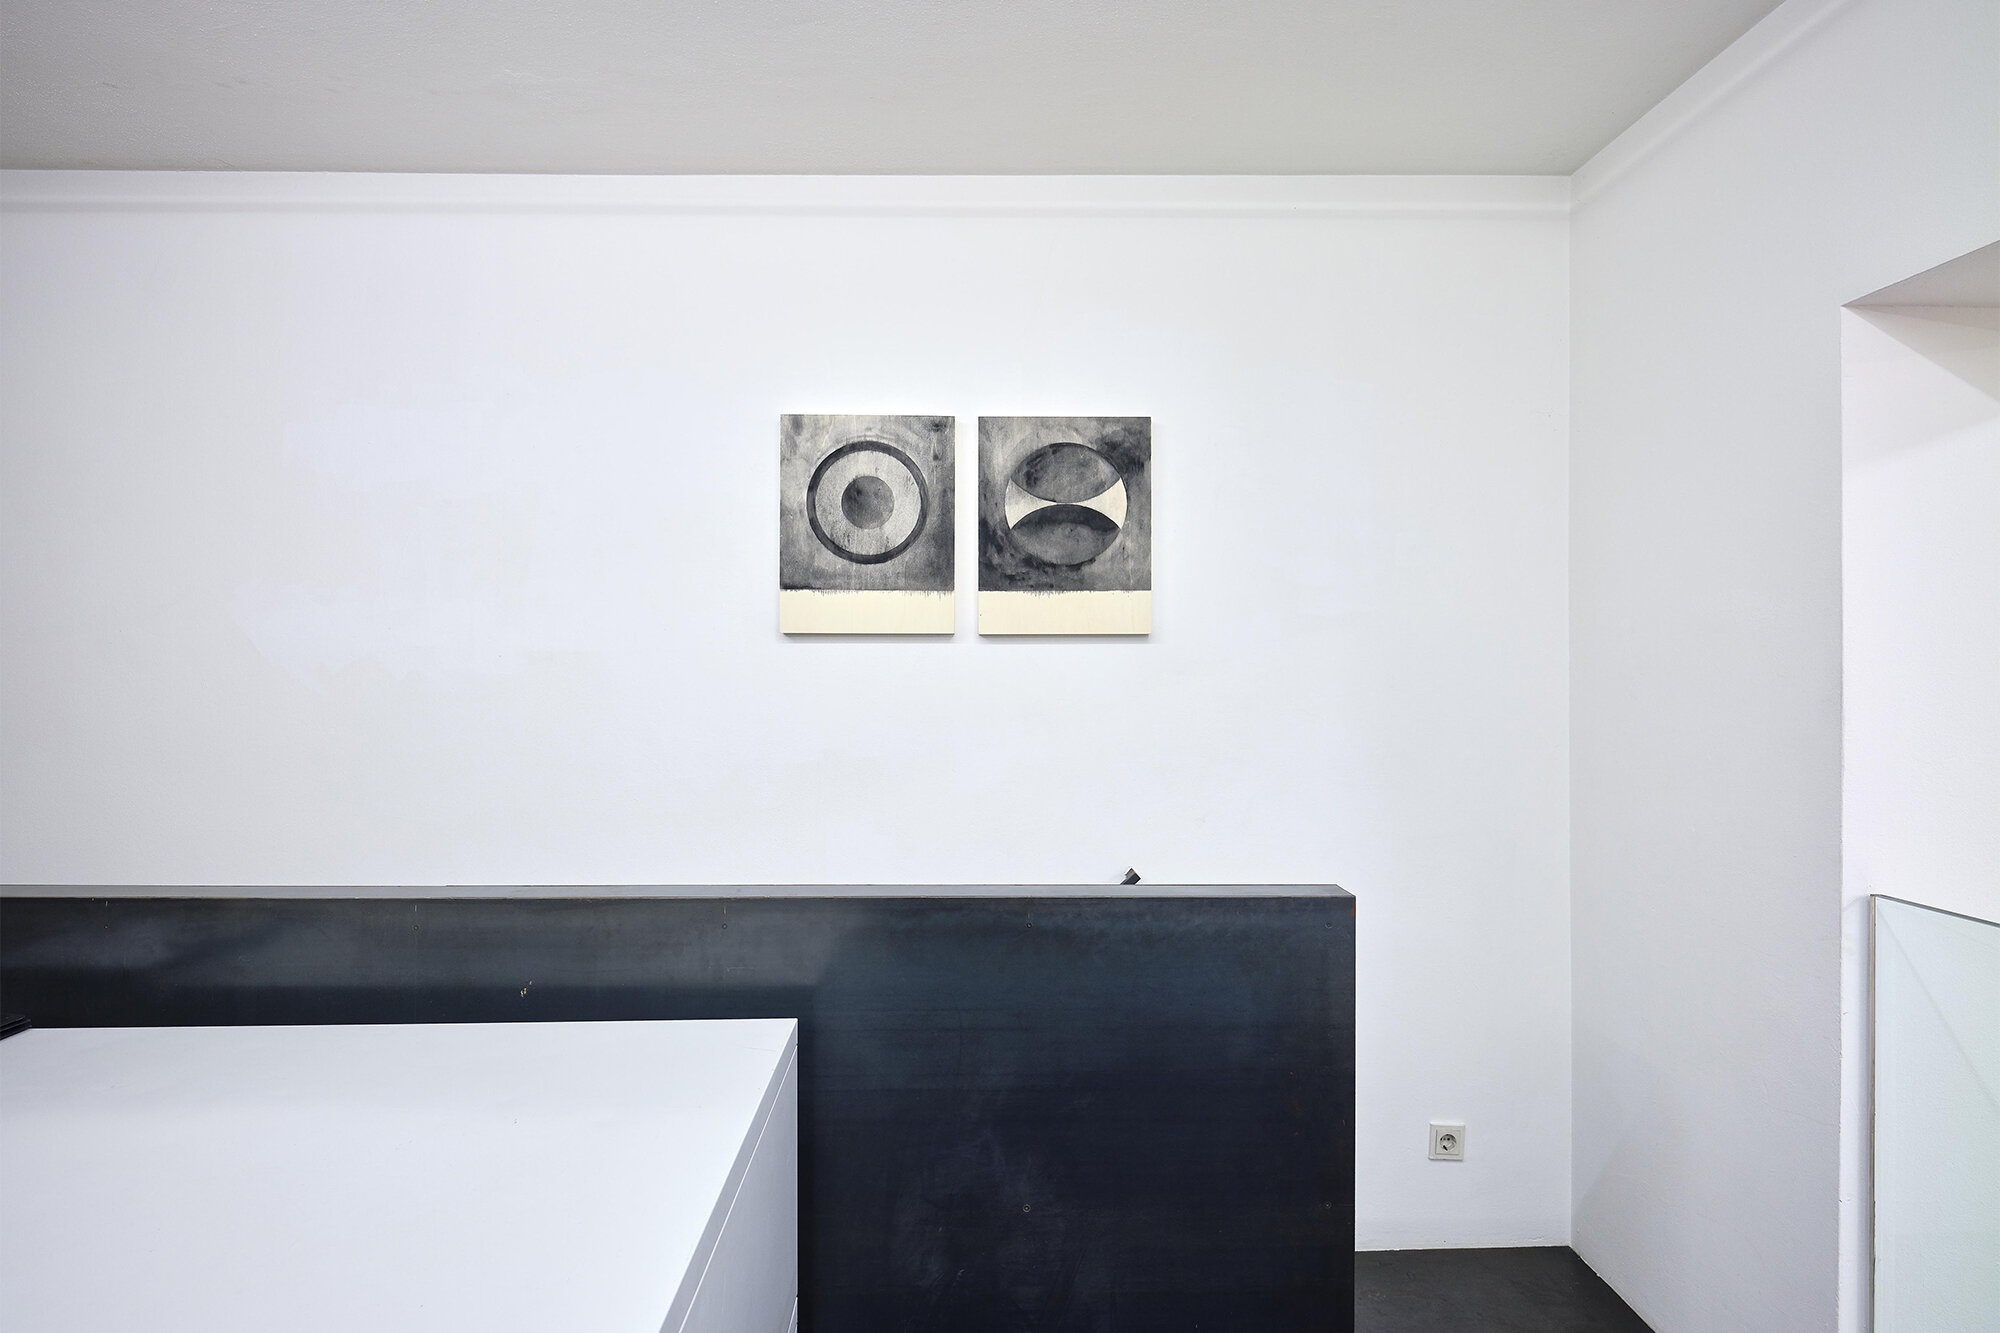 Galerie+Johann+Widauer-Exhibition-2020-Matt-Mullican-08.jpg